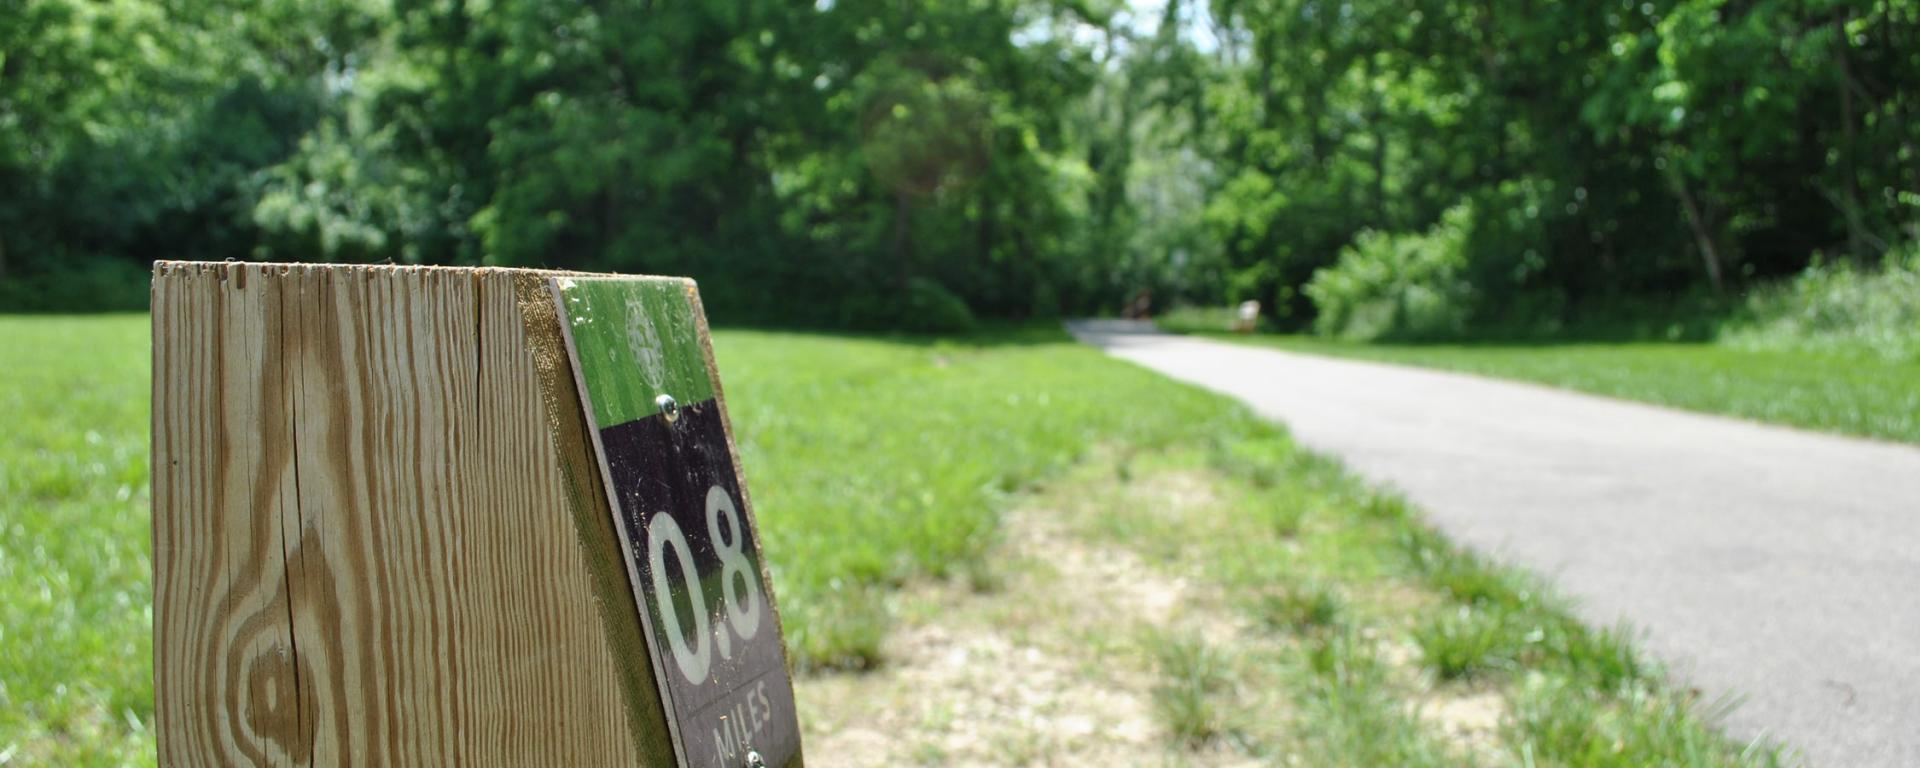 mile marker on park trail